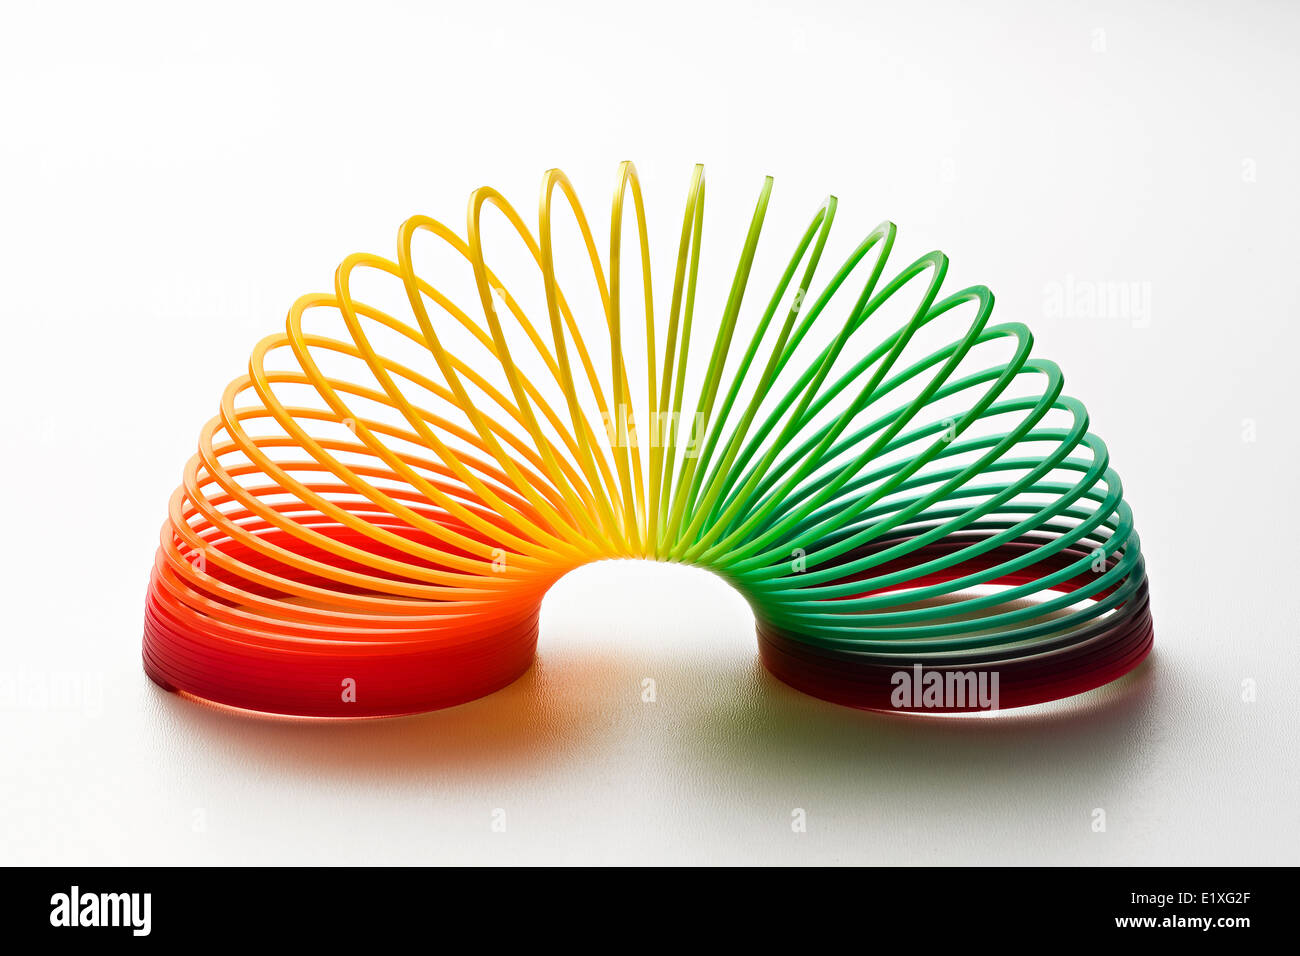 Regenbogen farbige slinky Spielzeug aus einem Kunststoff-Draht Spirale ermöglicht Flexibilität und Mobilität Stockfoto